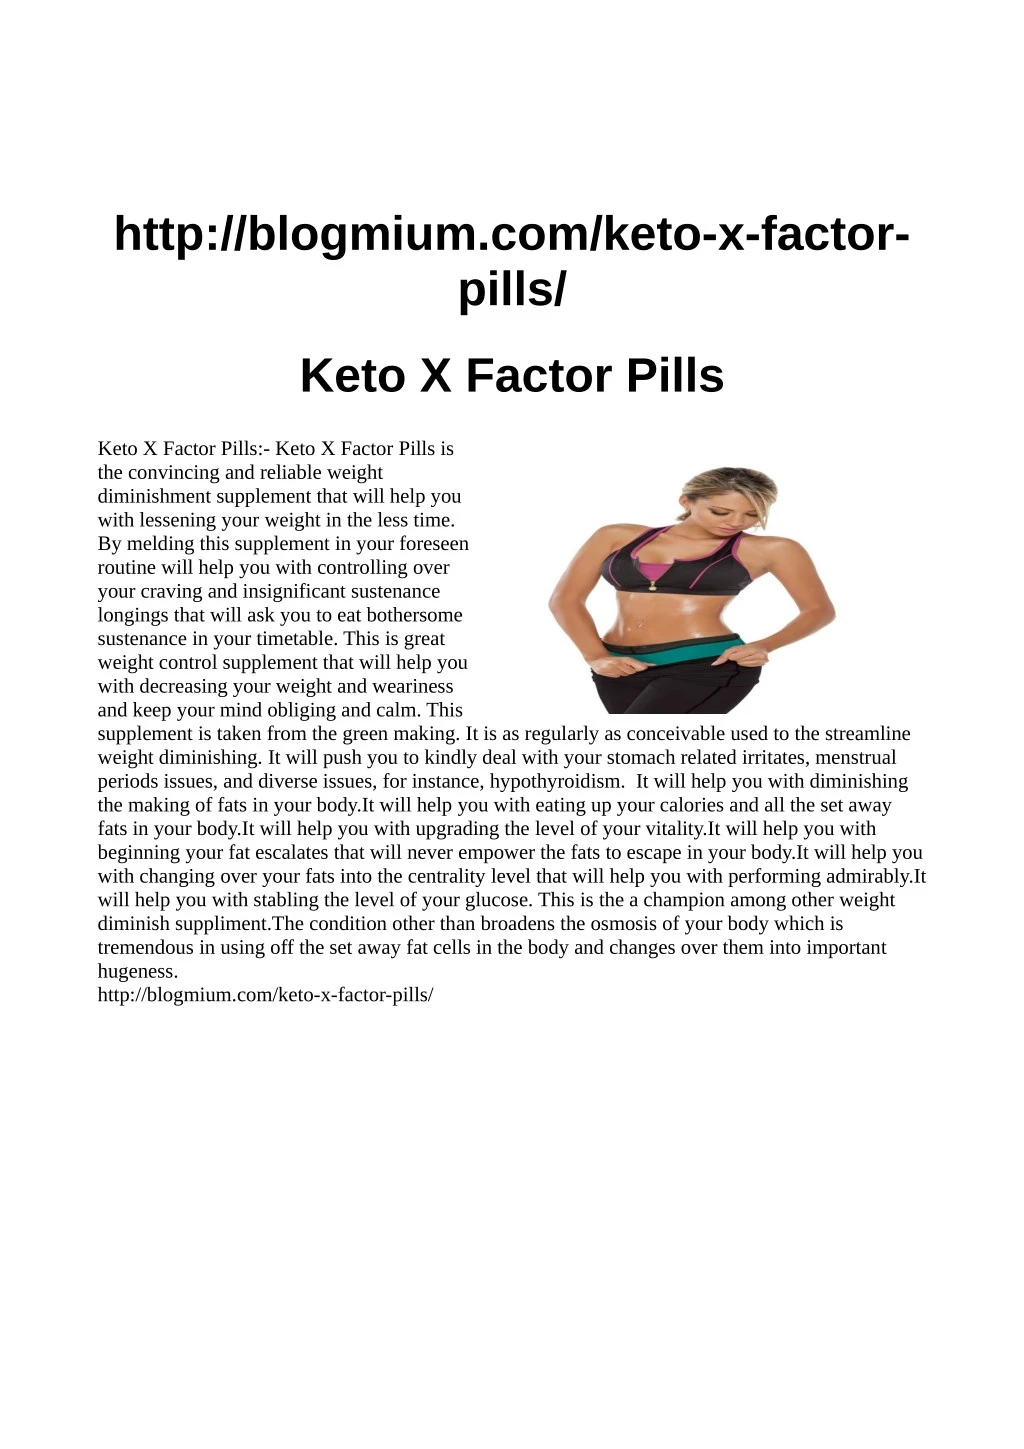 http blogmium com keto x factor pills